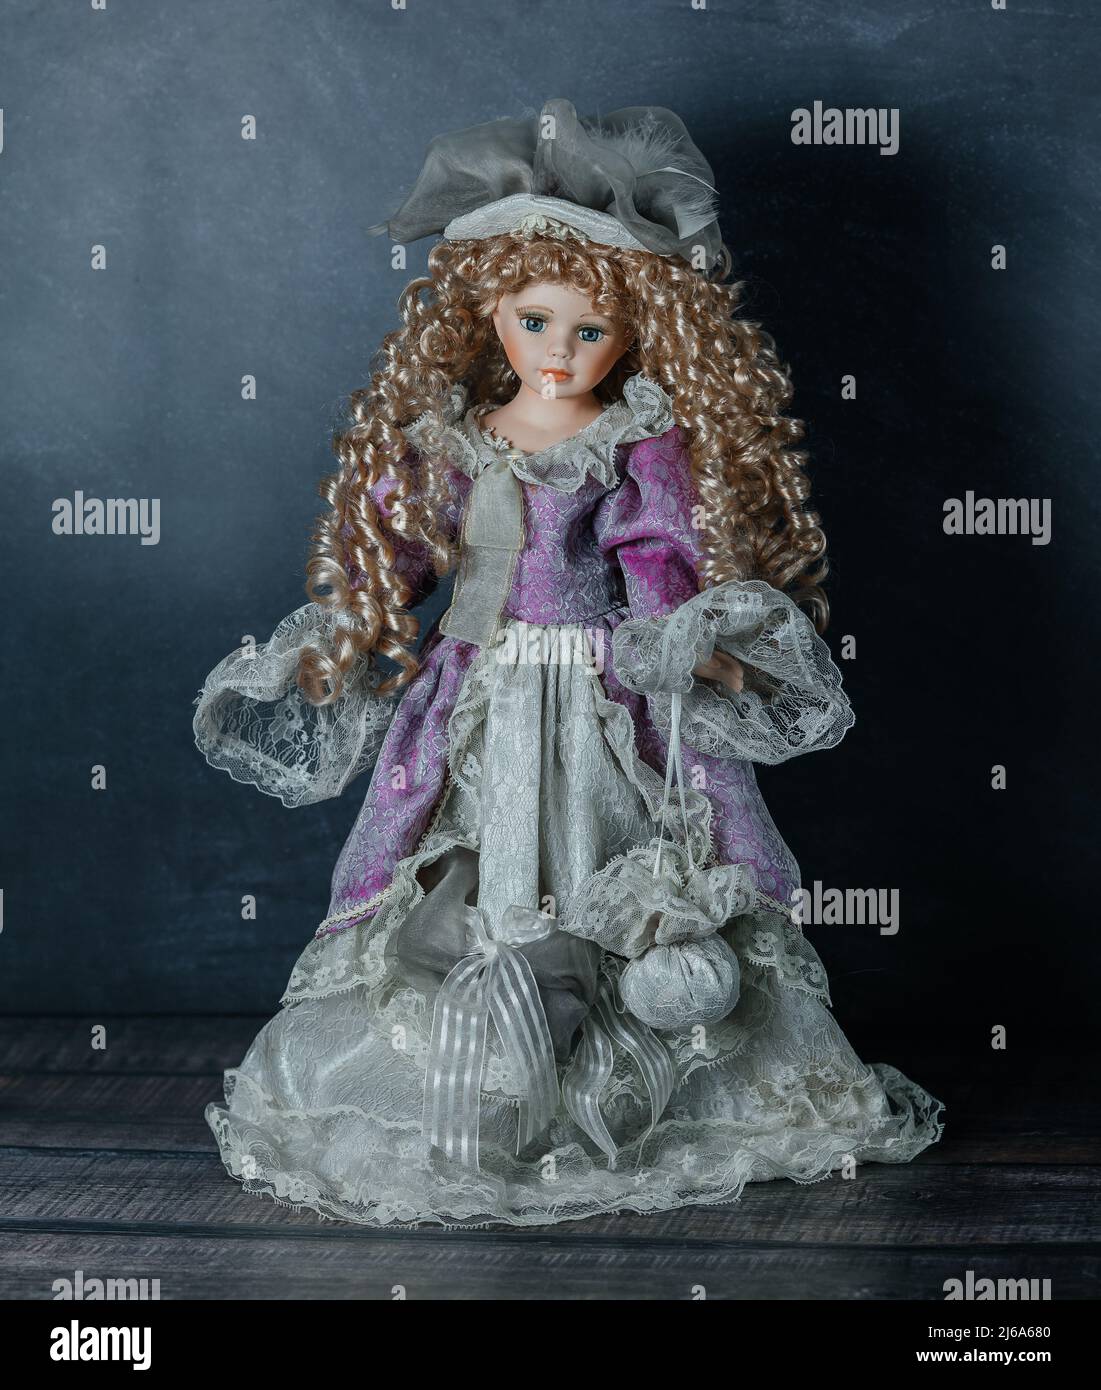 Incroyable réaliste vintage jouet avec les yeux bleus.la poupée habillée dans une robe rose et a un cheveux blond. Mise au point sélective. Poupée en porcelaine Banque D'Images